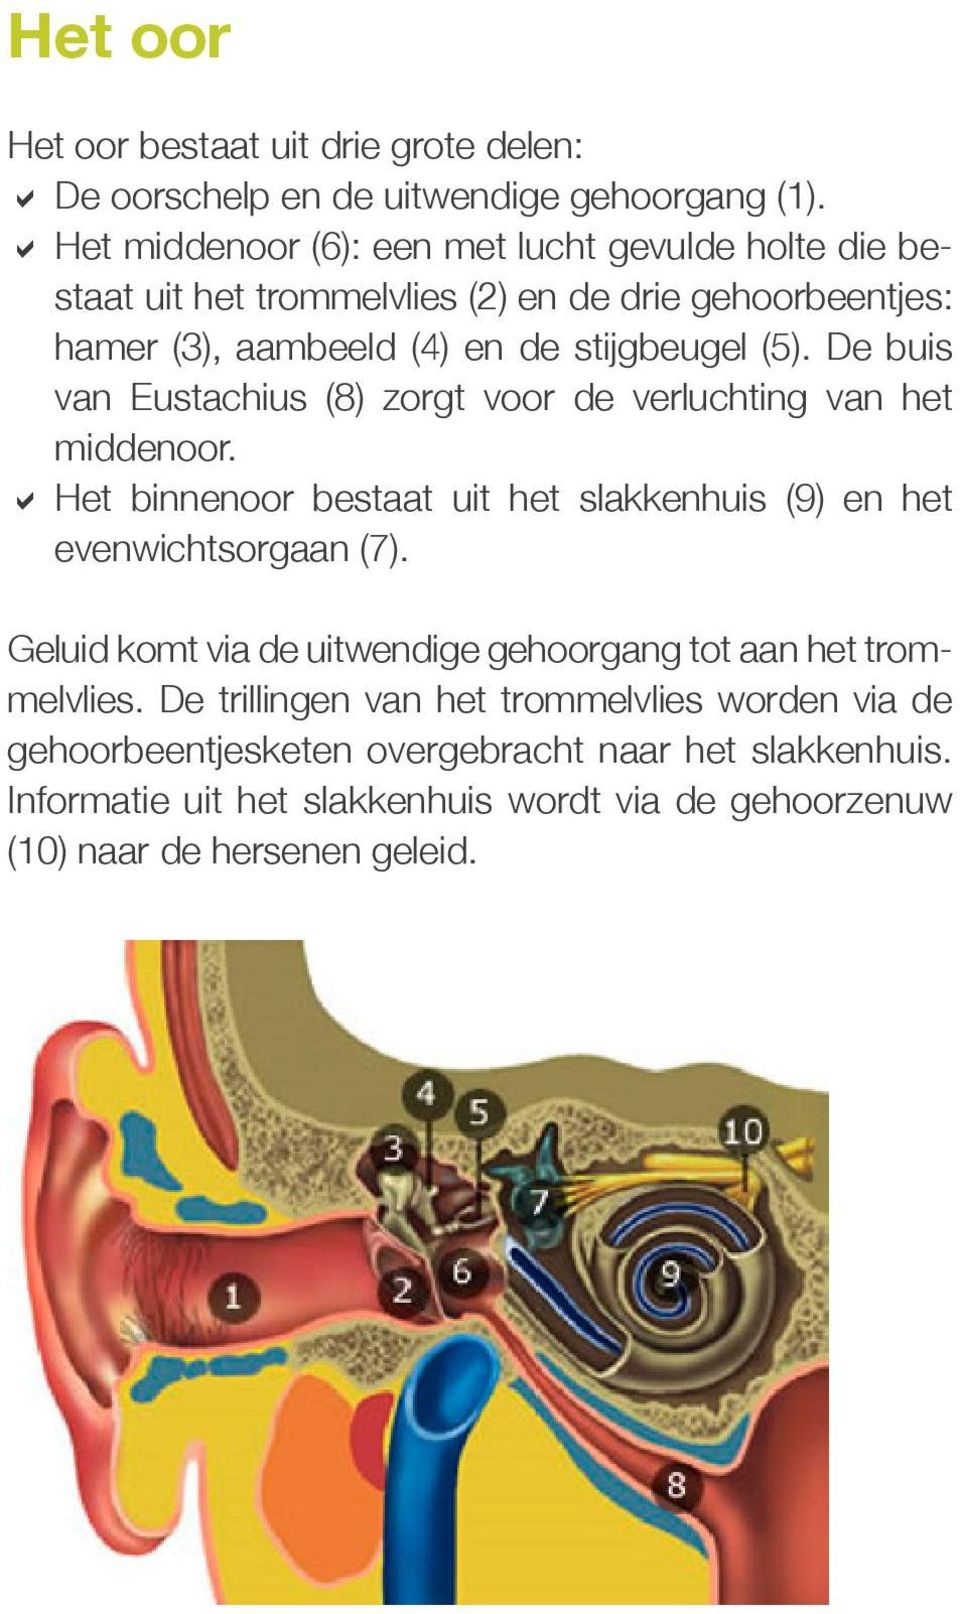 De buis van Eustachius (8) zorgt voor de verluchting van het middenoor. DDHet binnenoor bestaat uit het slakkenhuis (9) en het evenwichtsorgaan (7).